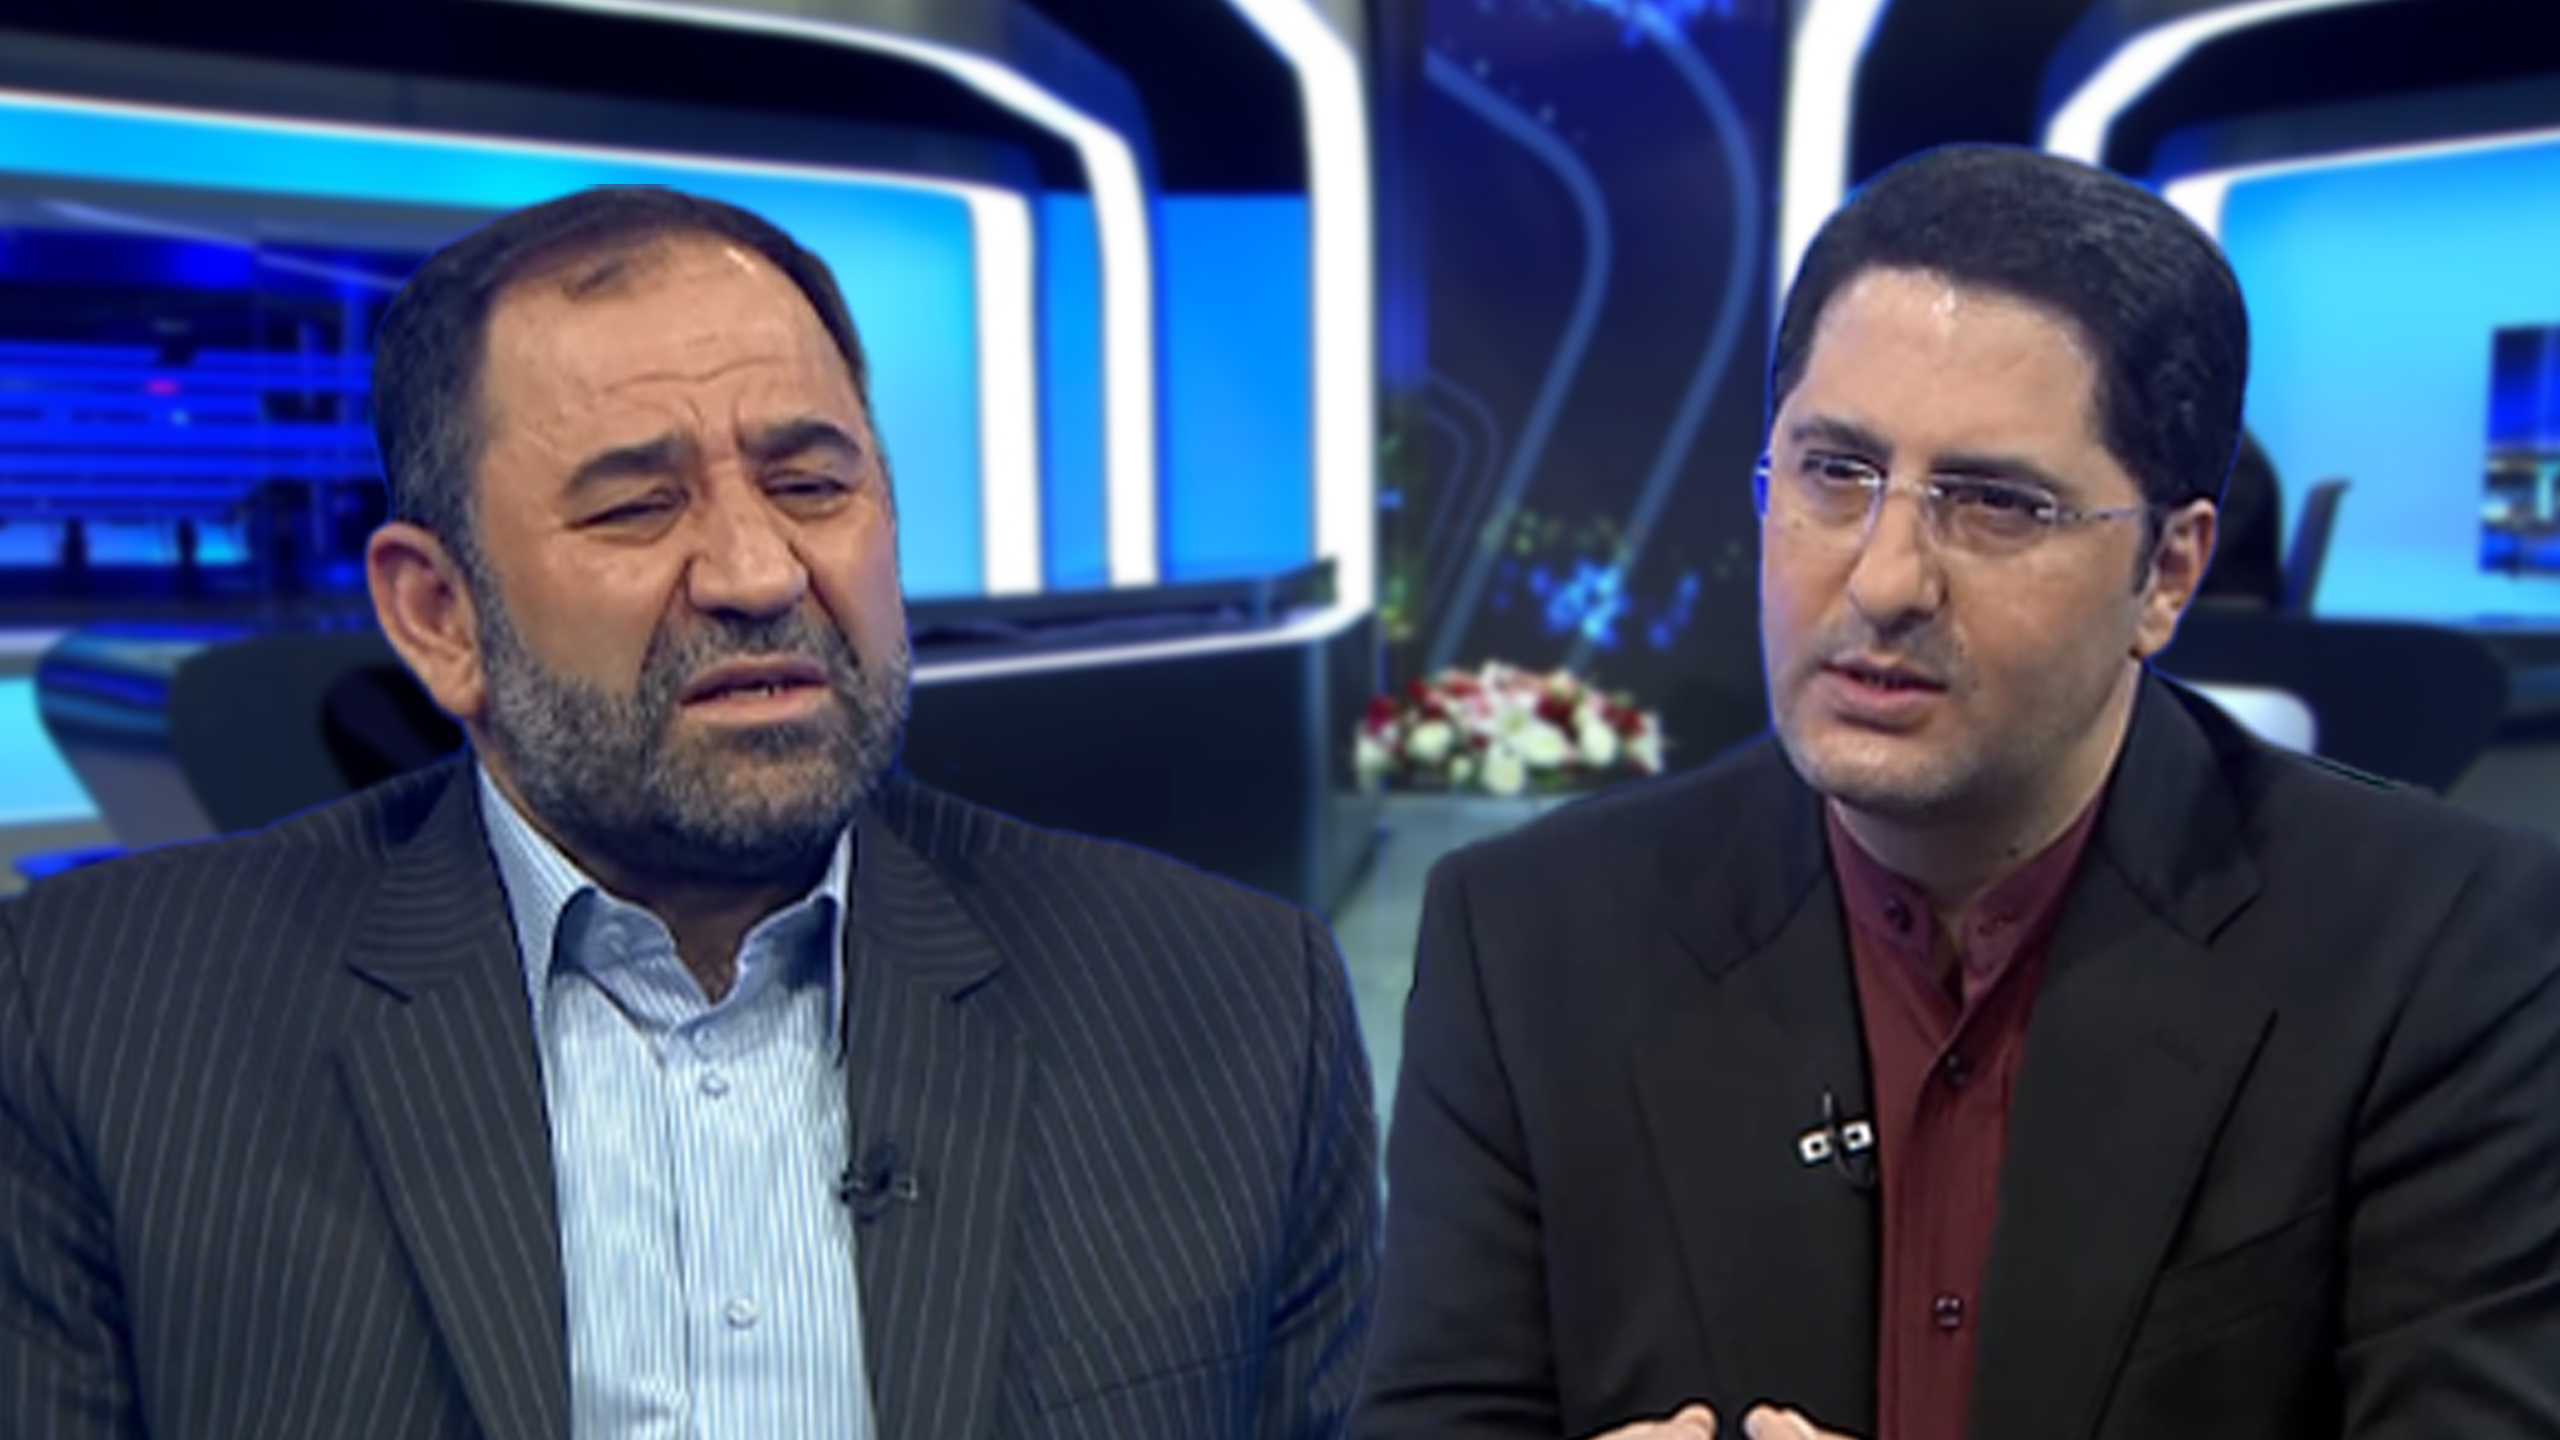  دکتر سعید سیفی مجری گفتگوی ویژه خبری صدا و سیما